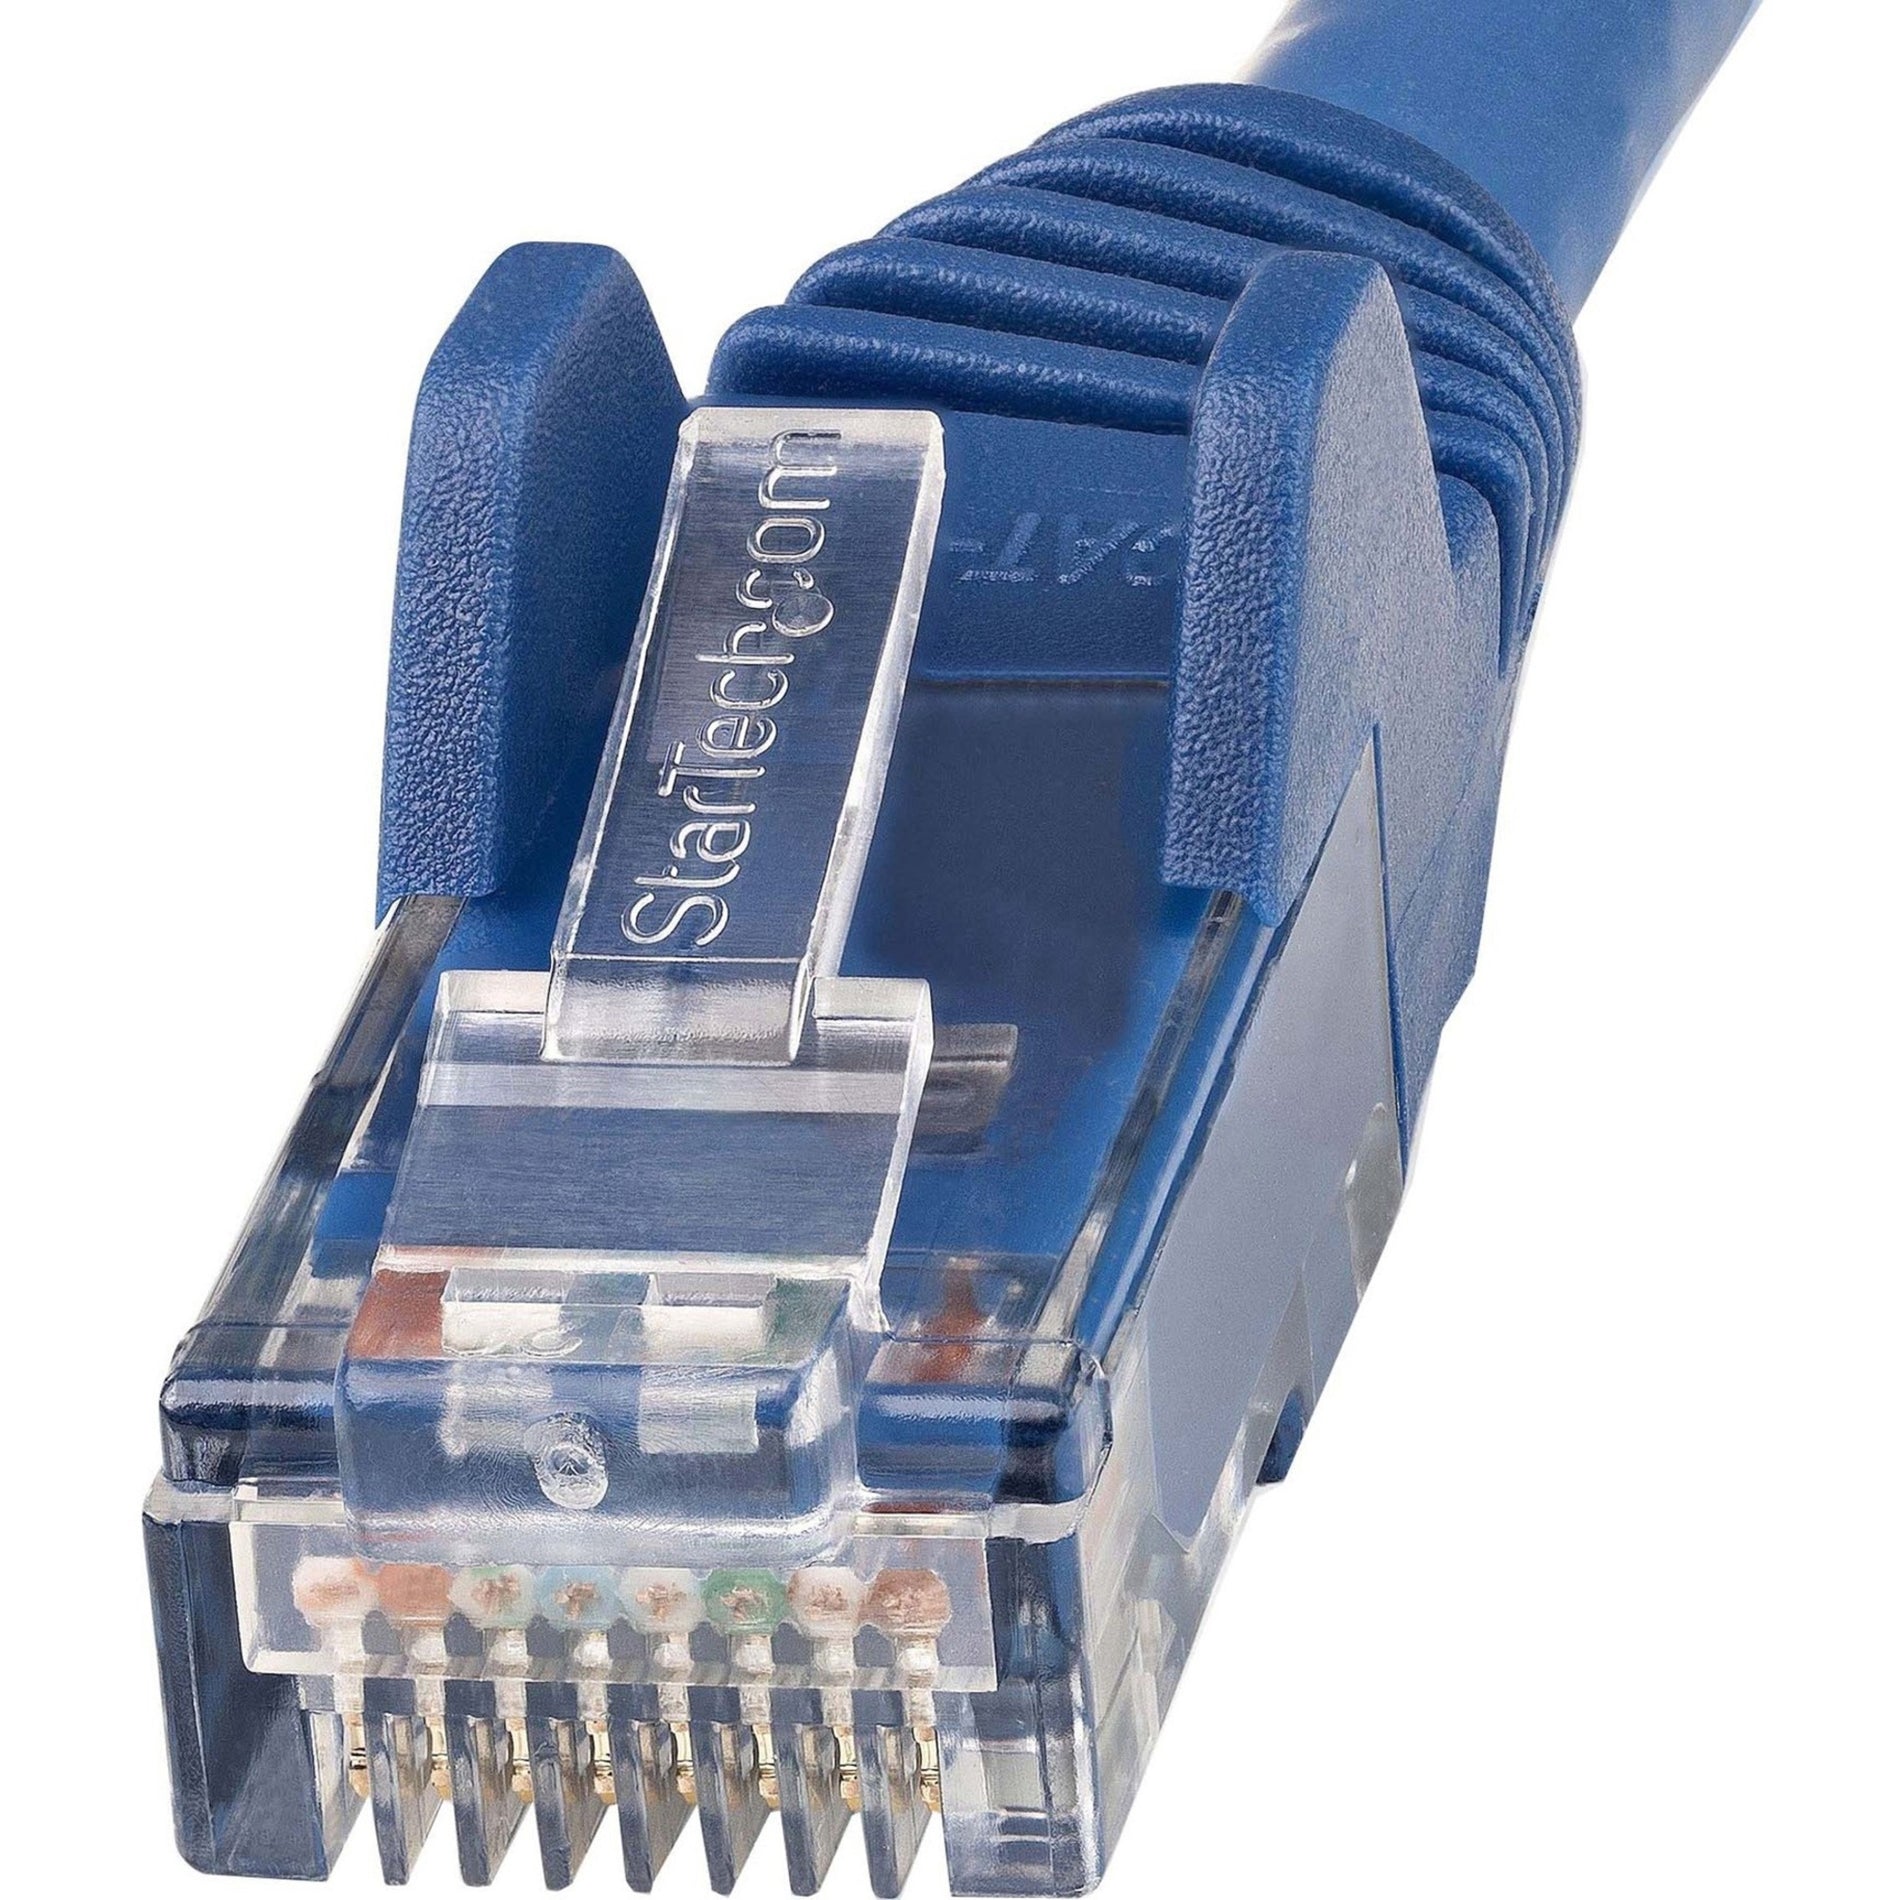 StarTech.com N6LPATCH10BL 10ft LSZH CAT6 Ethernet Cable - Blue, Flexible, PoE, Stranded, 10 Gbit/s